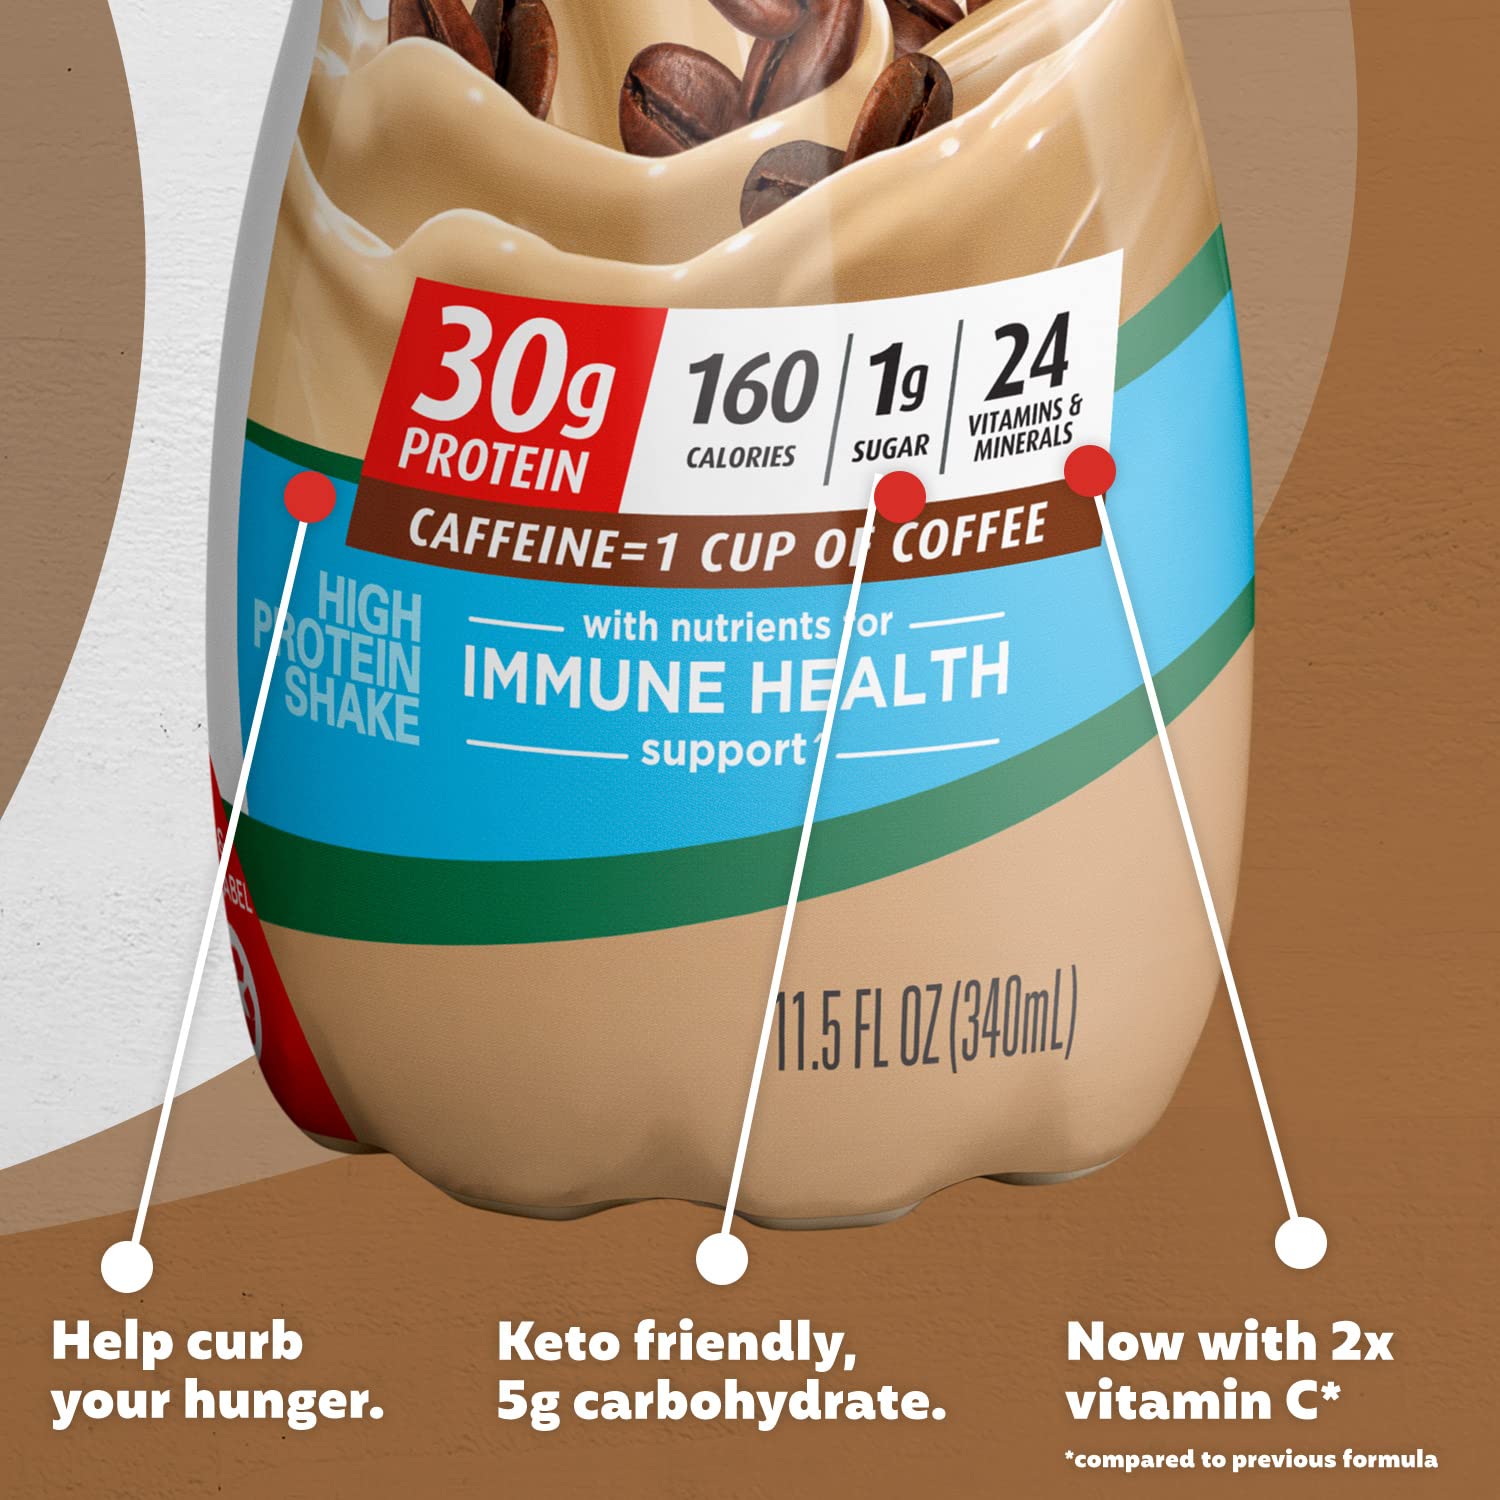 Premier Protein Shake, Café Latte, 30g Protein, 1g Sugar, 24 Vitamins & Minerals, Nutrients to Support Immune Health 11.5 fl oz, 12 Pack